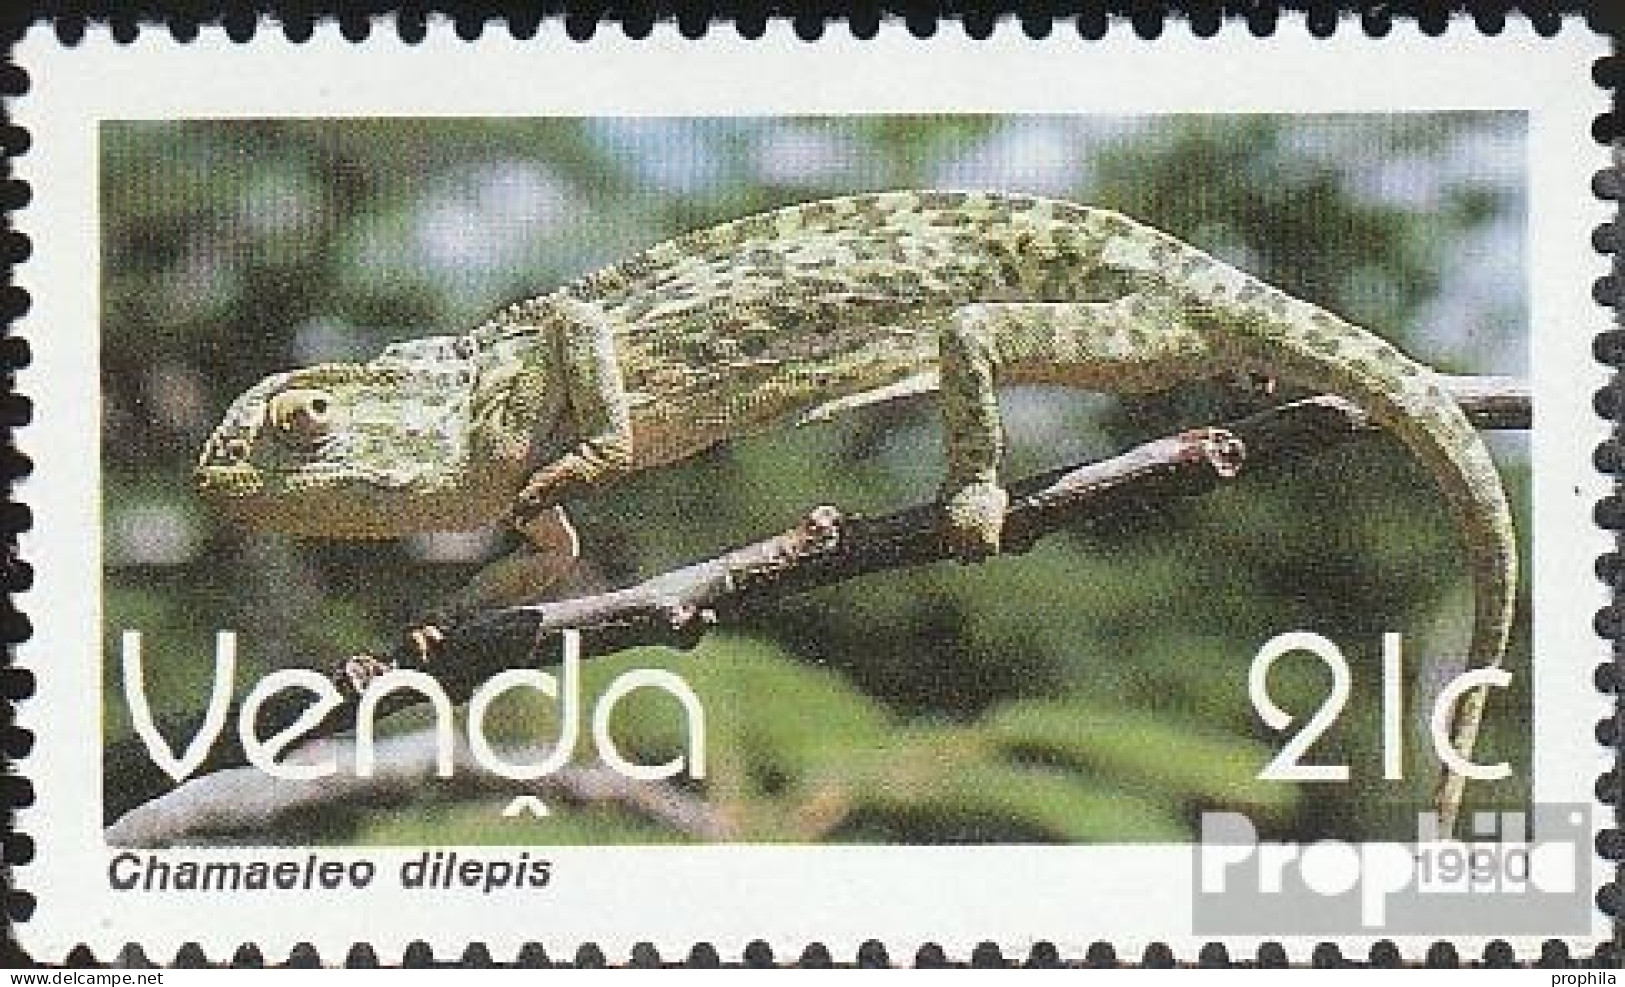 Südafrika - Venda 208 (kompl.Ausg.) Postfrisch 1990 Freimarke: Reptilien - Venda